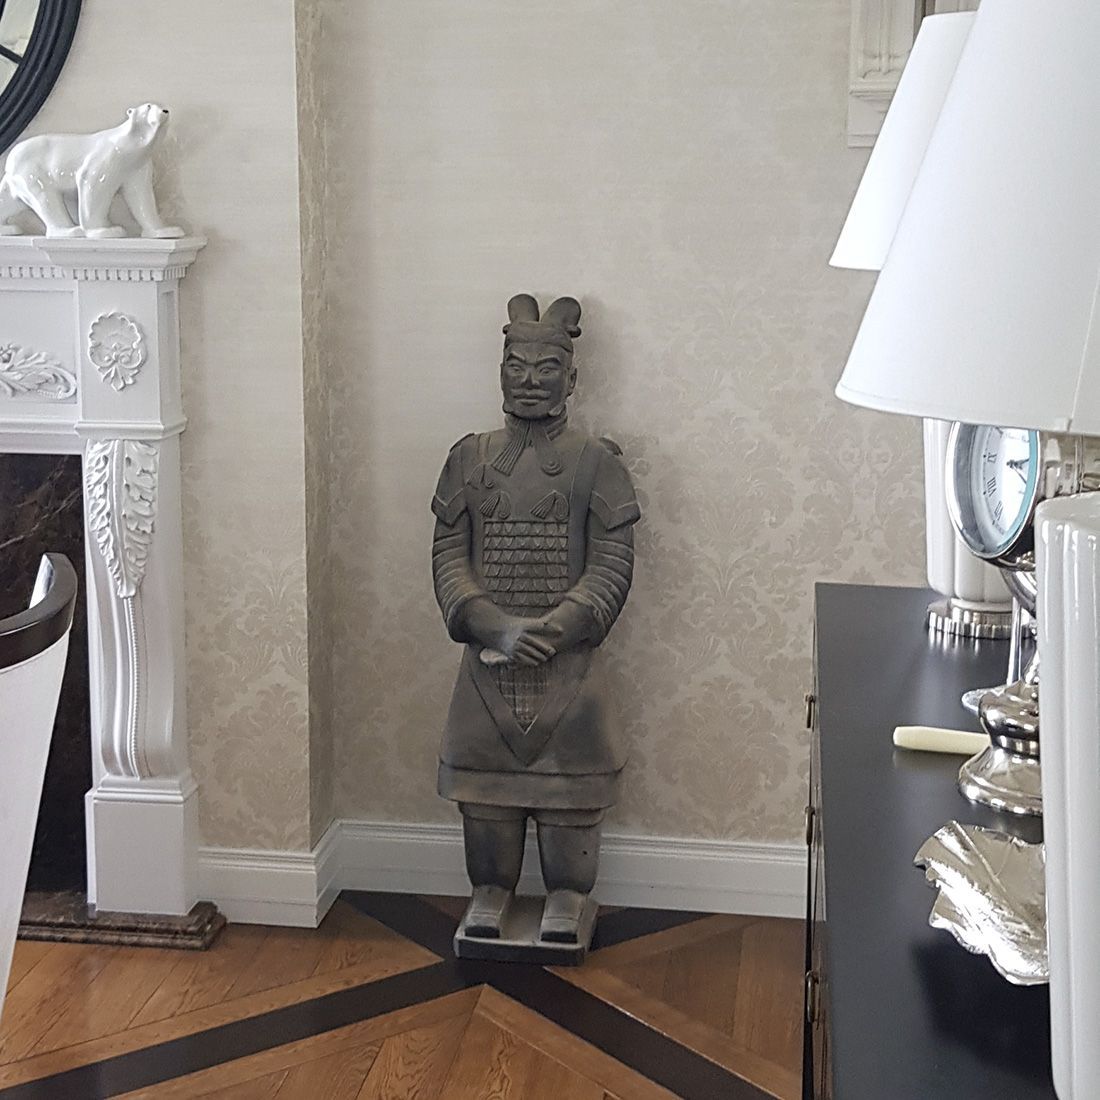 Статуя, "Терракотовый воин" - Офицер императорской гвардии в интернет-студии декора / шоурум | ChinaHouse.studio